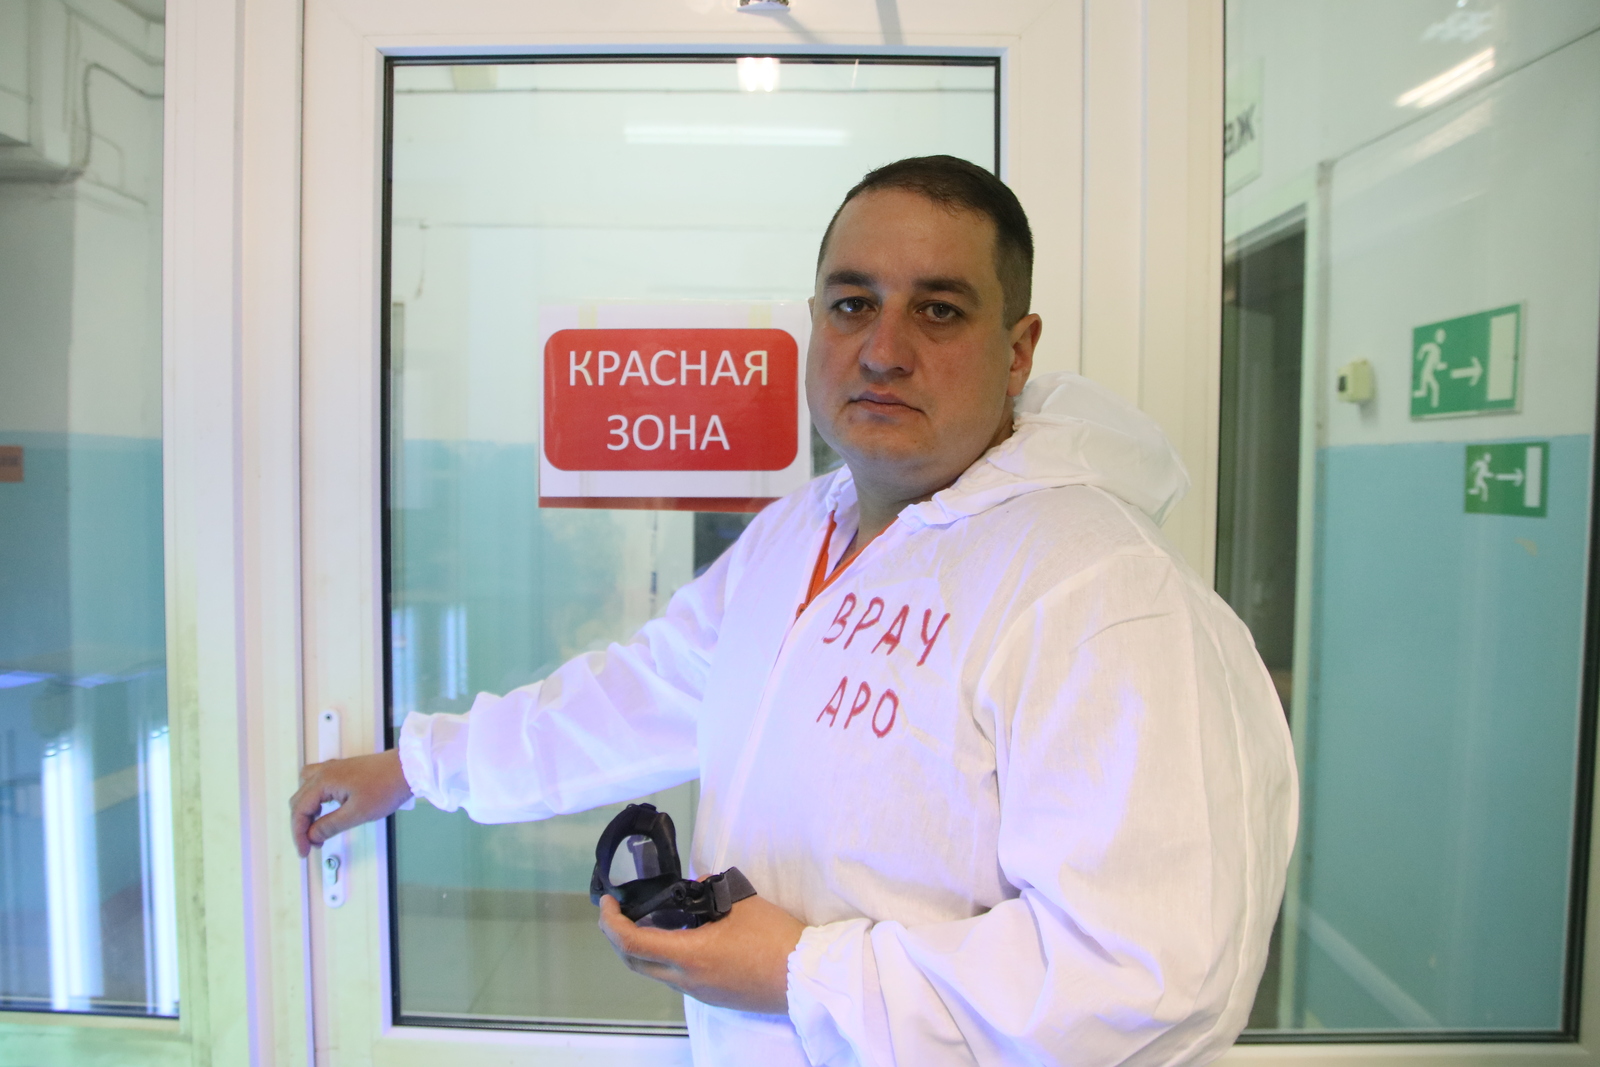 Сейчас Альберт Фахразов работает в ковид-госпитале, который в третий раз за пандемию развернут во втором стационаре. / Фото: Виктор Лушкин